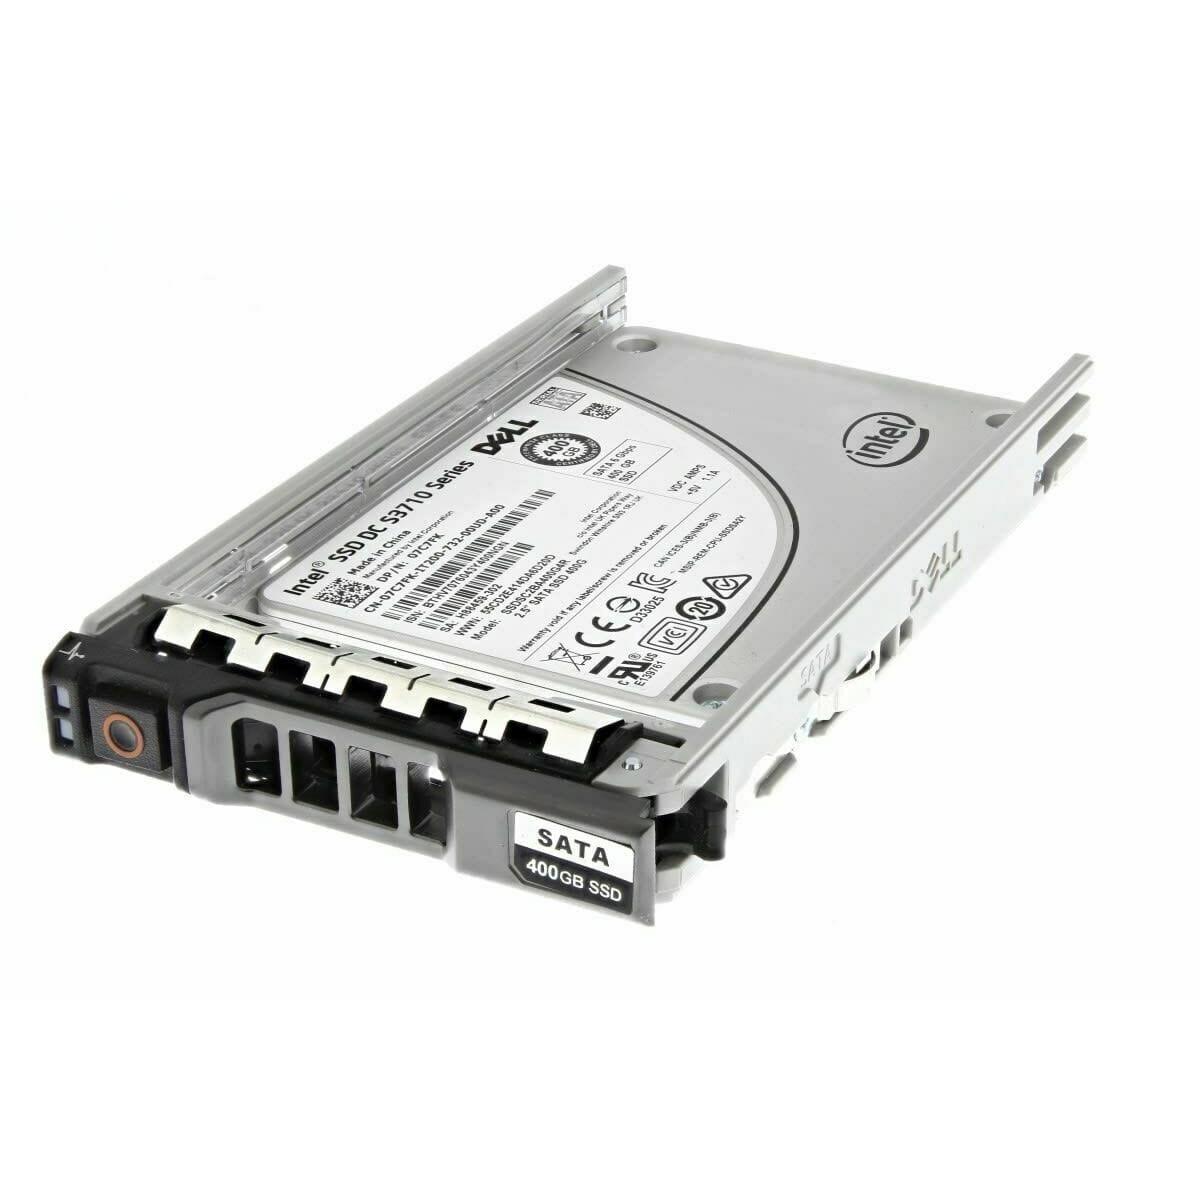 Dell 400GB SSD SATA MLC Hard Drive 2.5in 6GB/s - DELL-2.5IN-400GB-SATA-SSD Refurbished - DELL-2.5IN-400GB-SATA-SSD-R - Reef Telecom